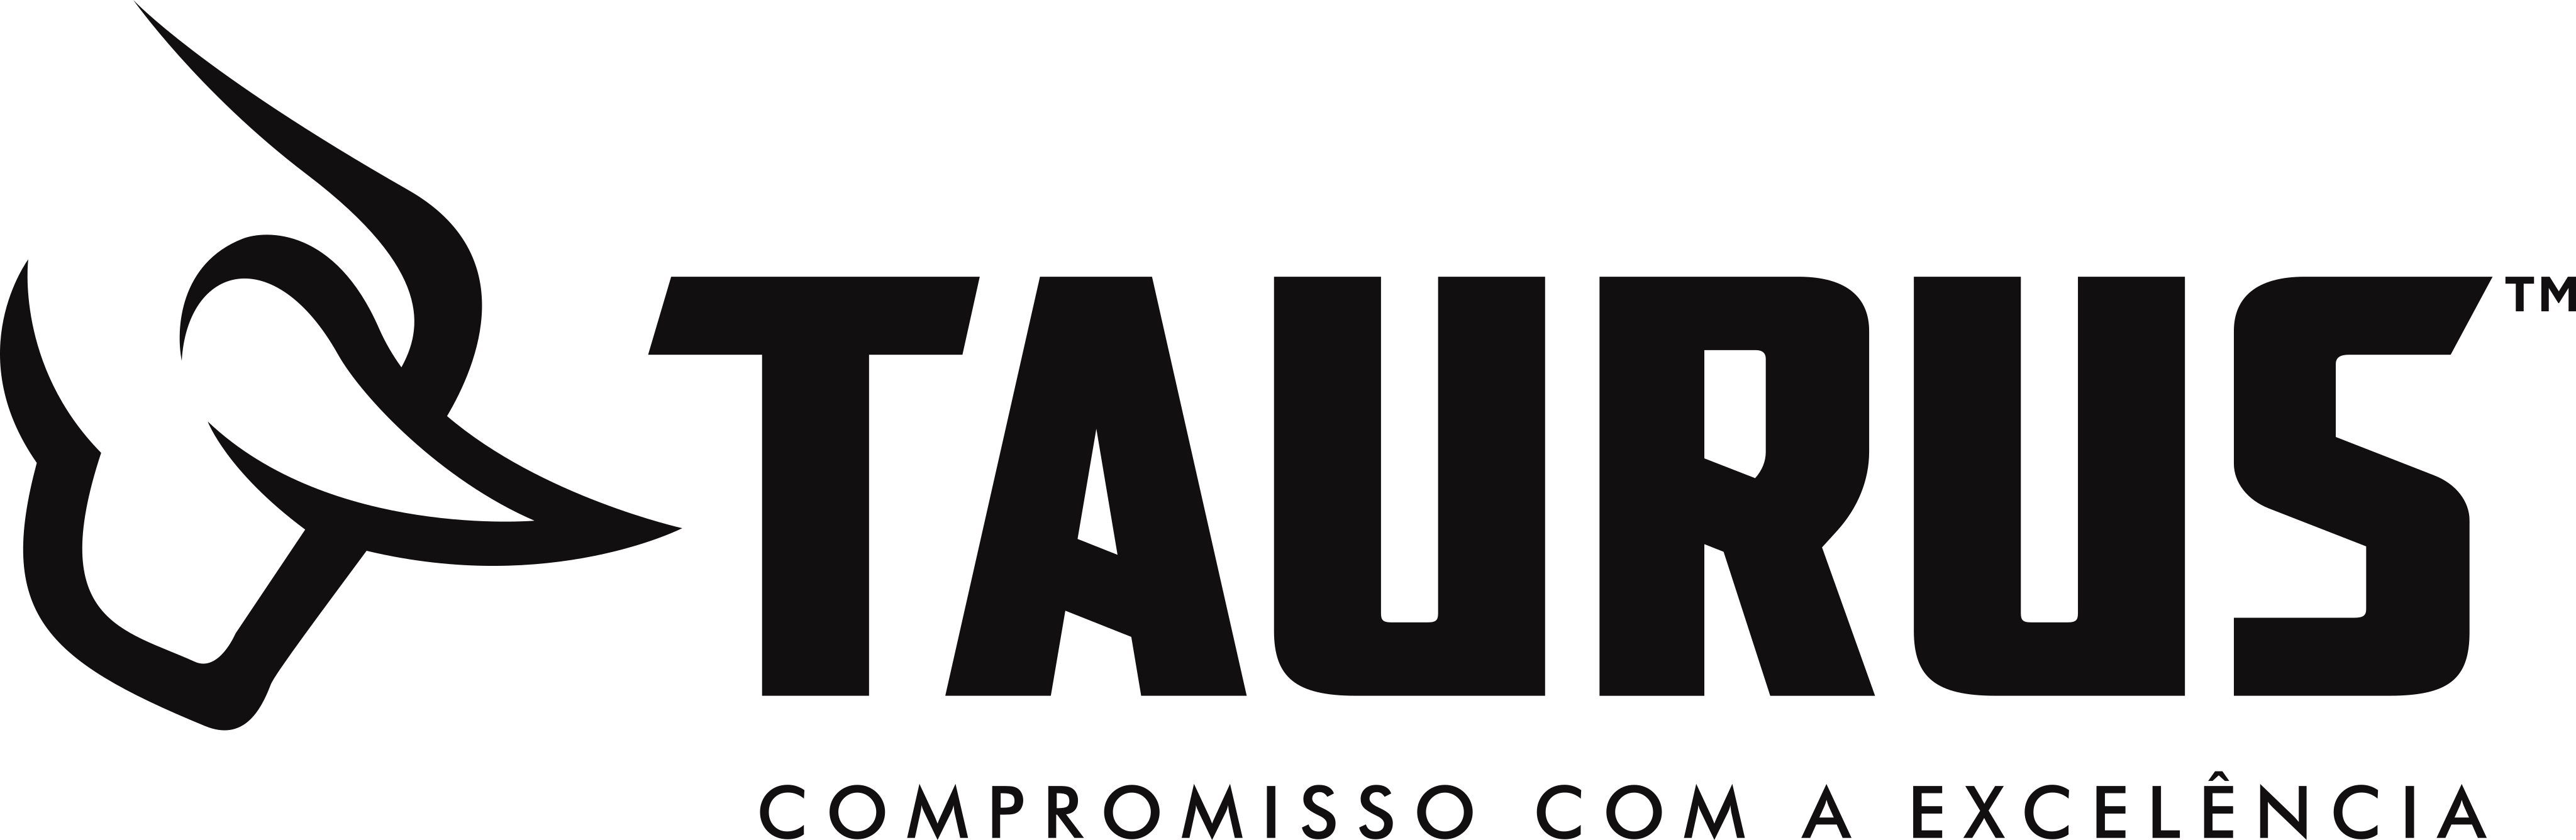 taurus logo - Taurus Armas Logo